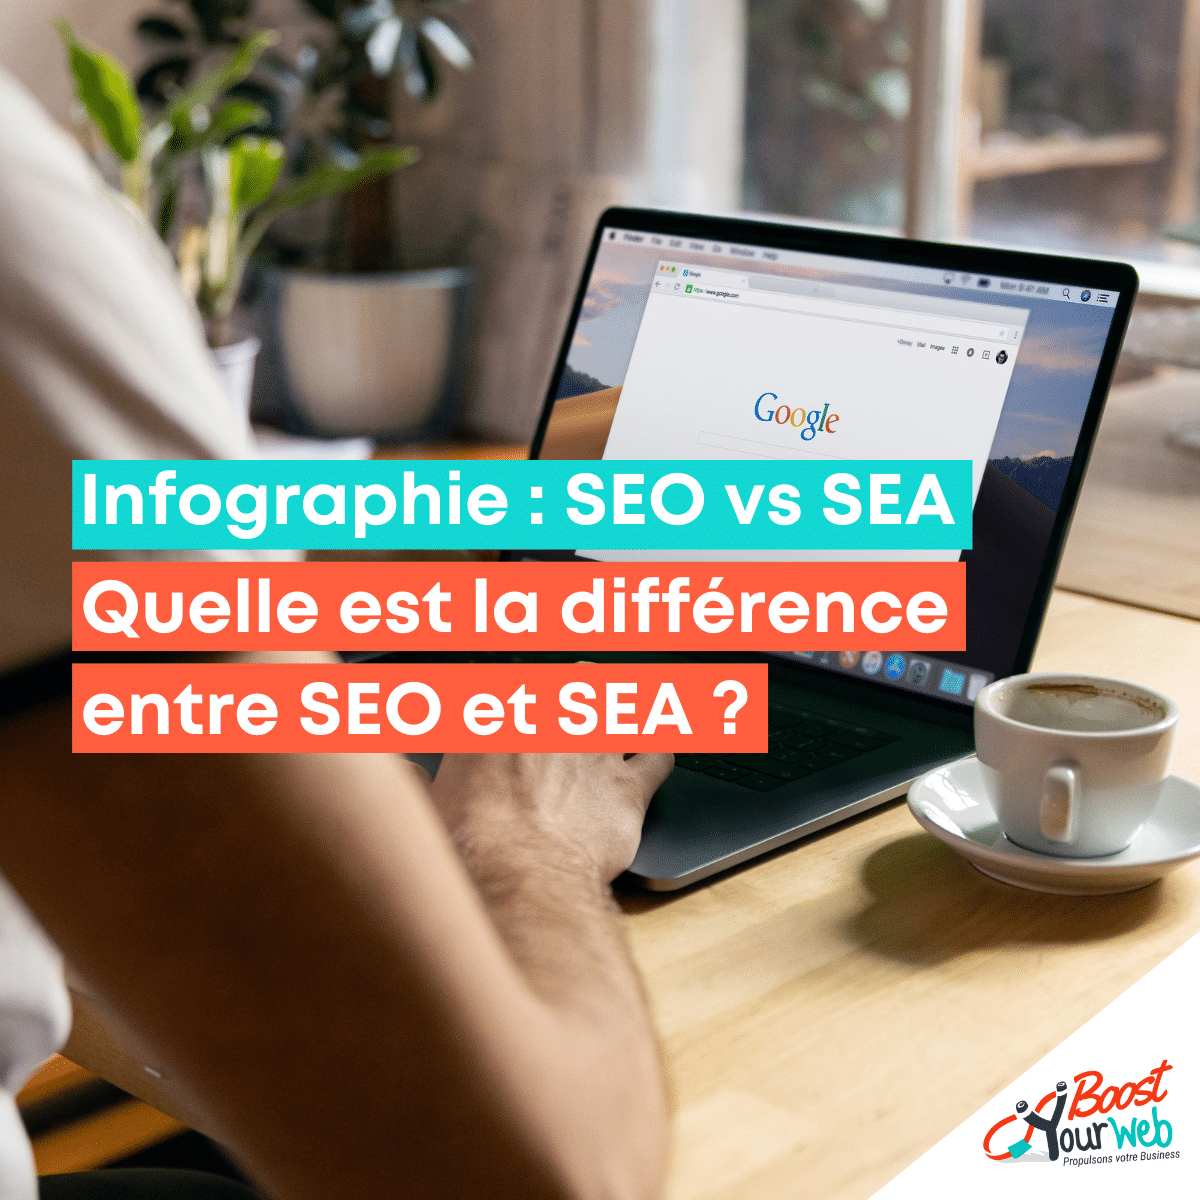 Infographie : SEO vs SEA Quelle est la différence entre le SEO et le SEA ?